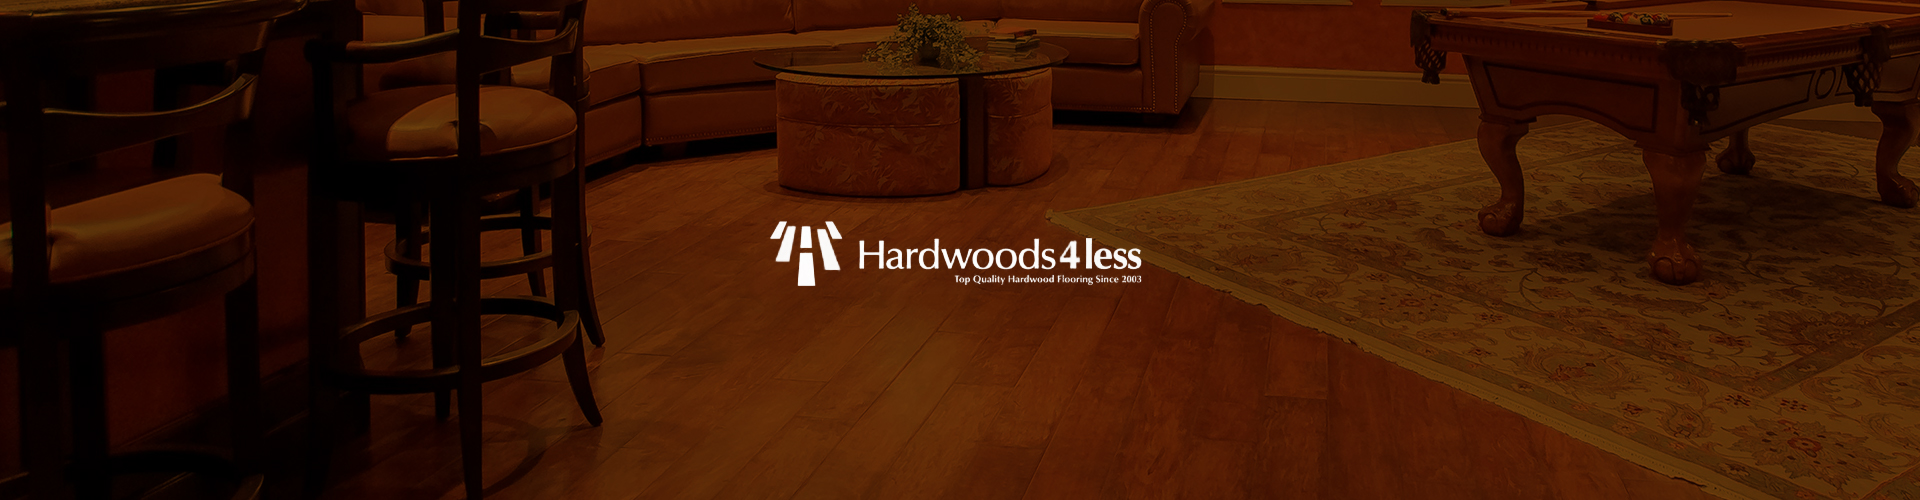 Hardwoods 4 Less banner